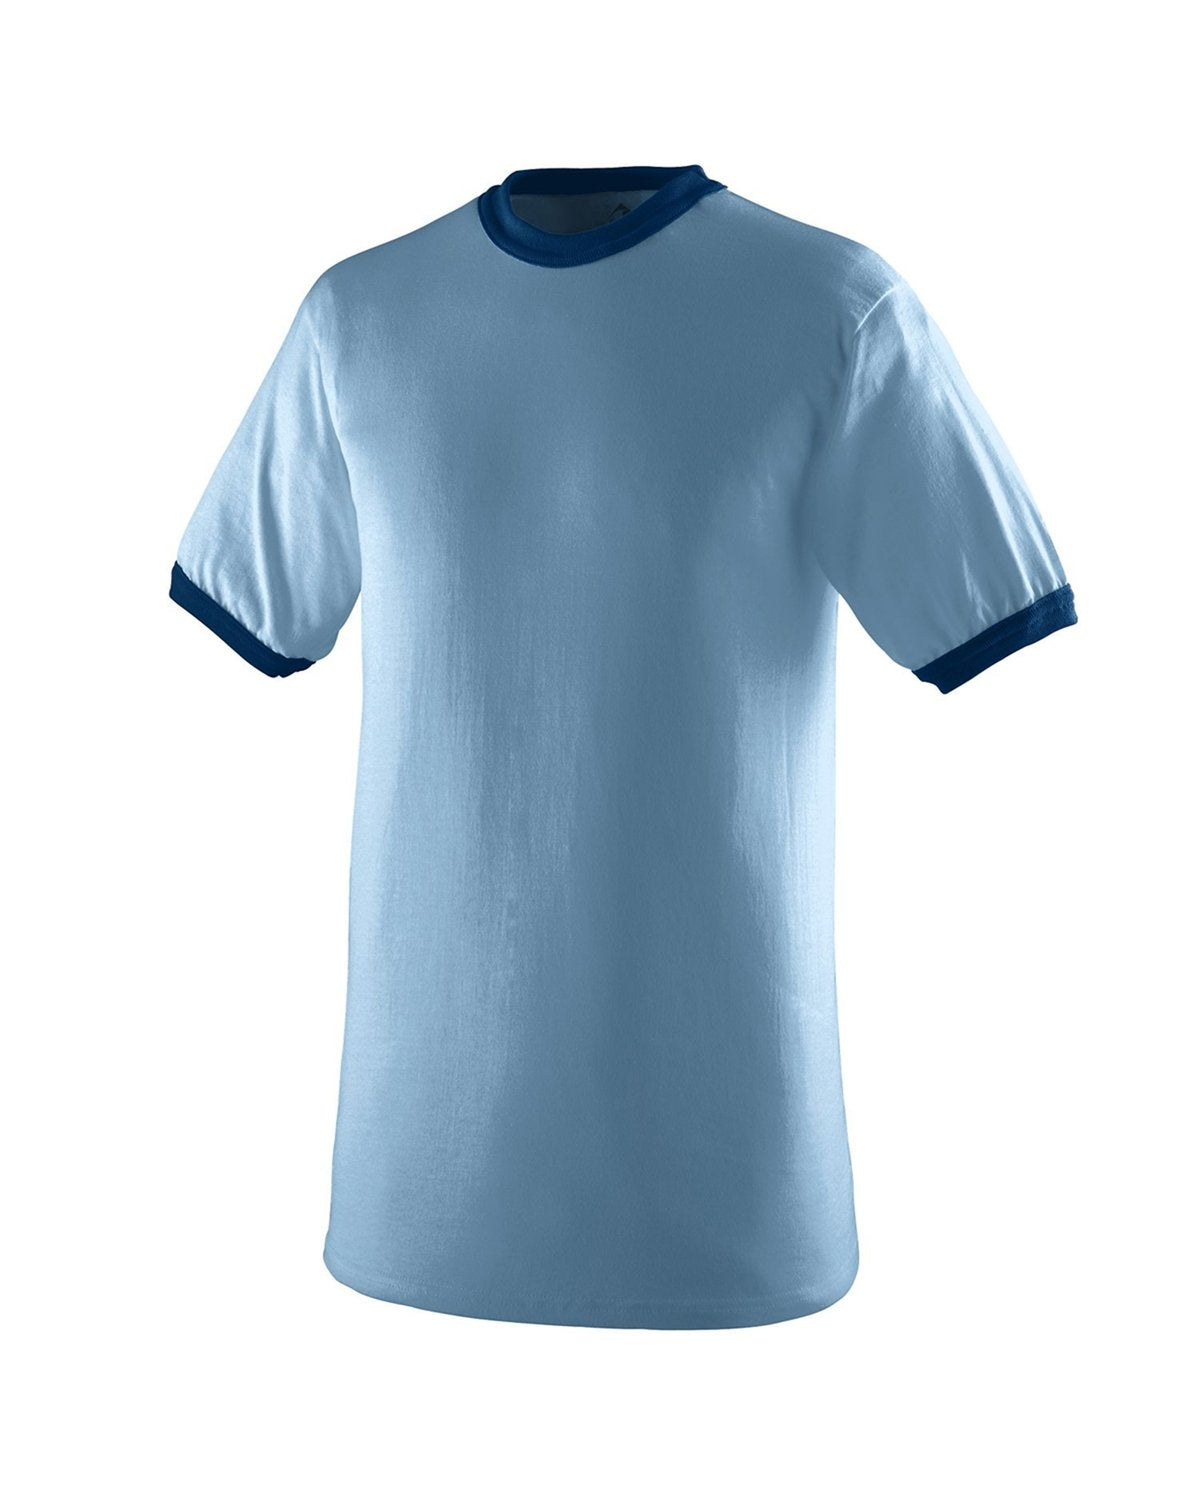 710-Augusta Sportswear-LIGHT BLUE/ NAVY